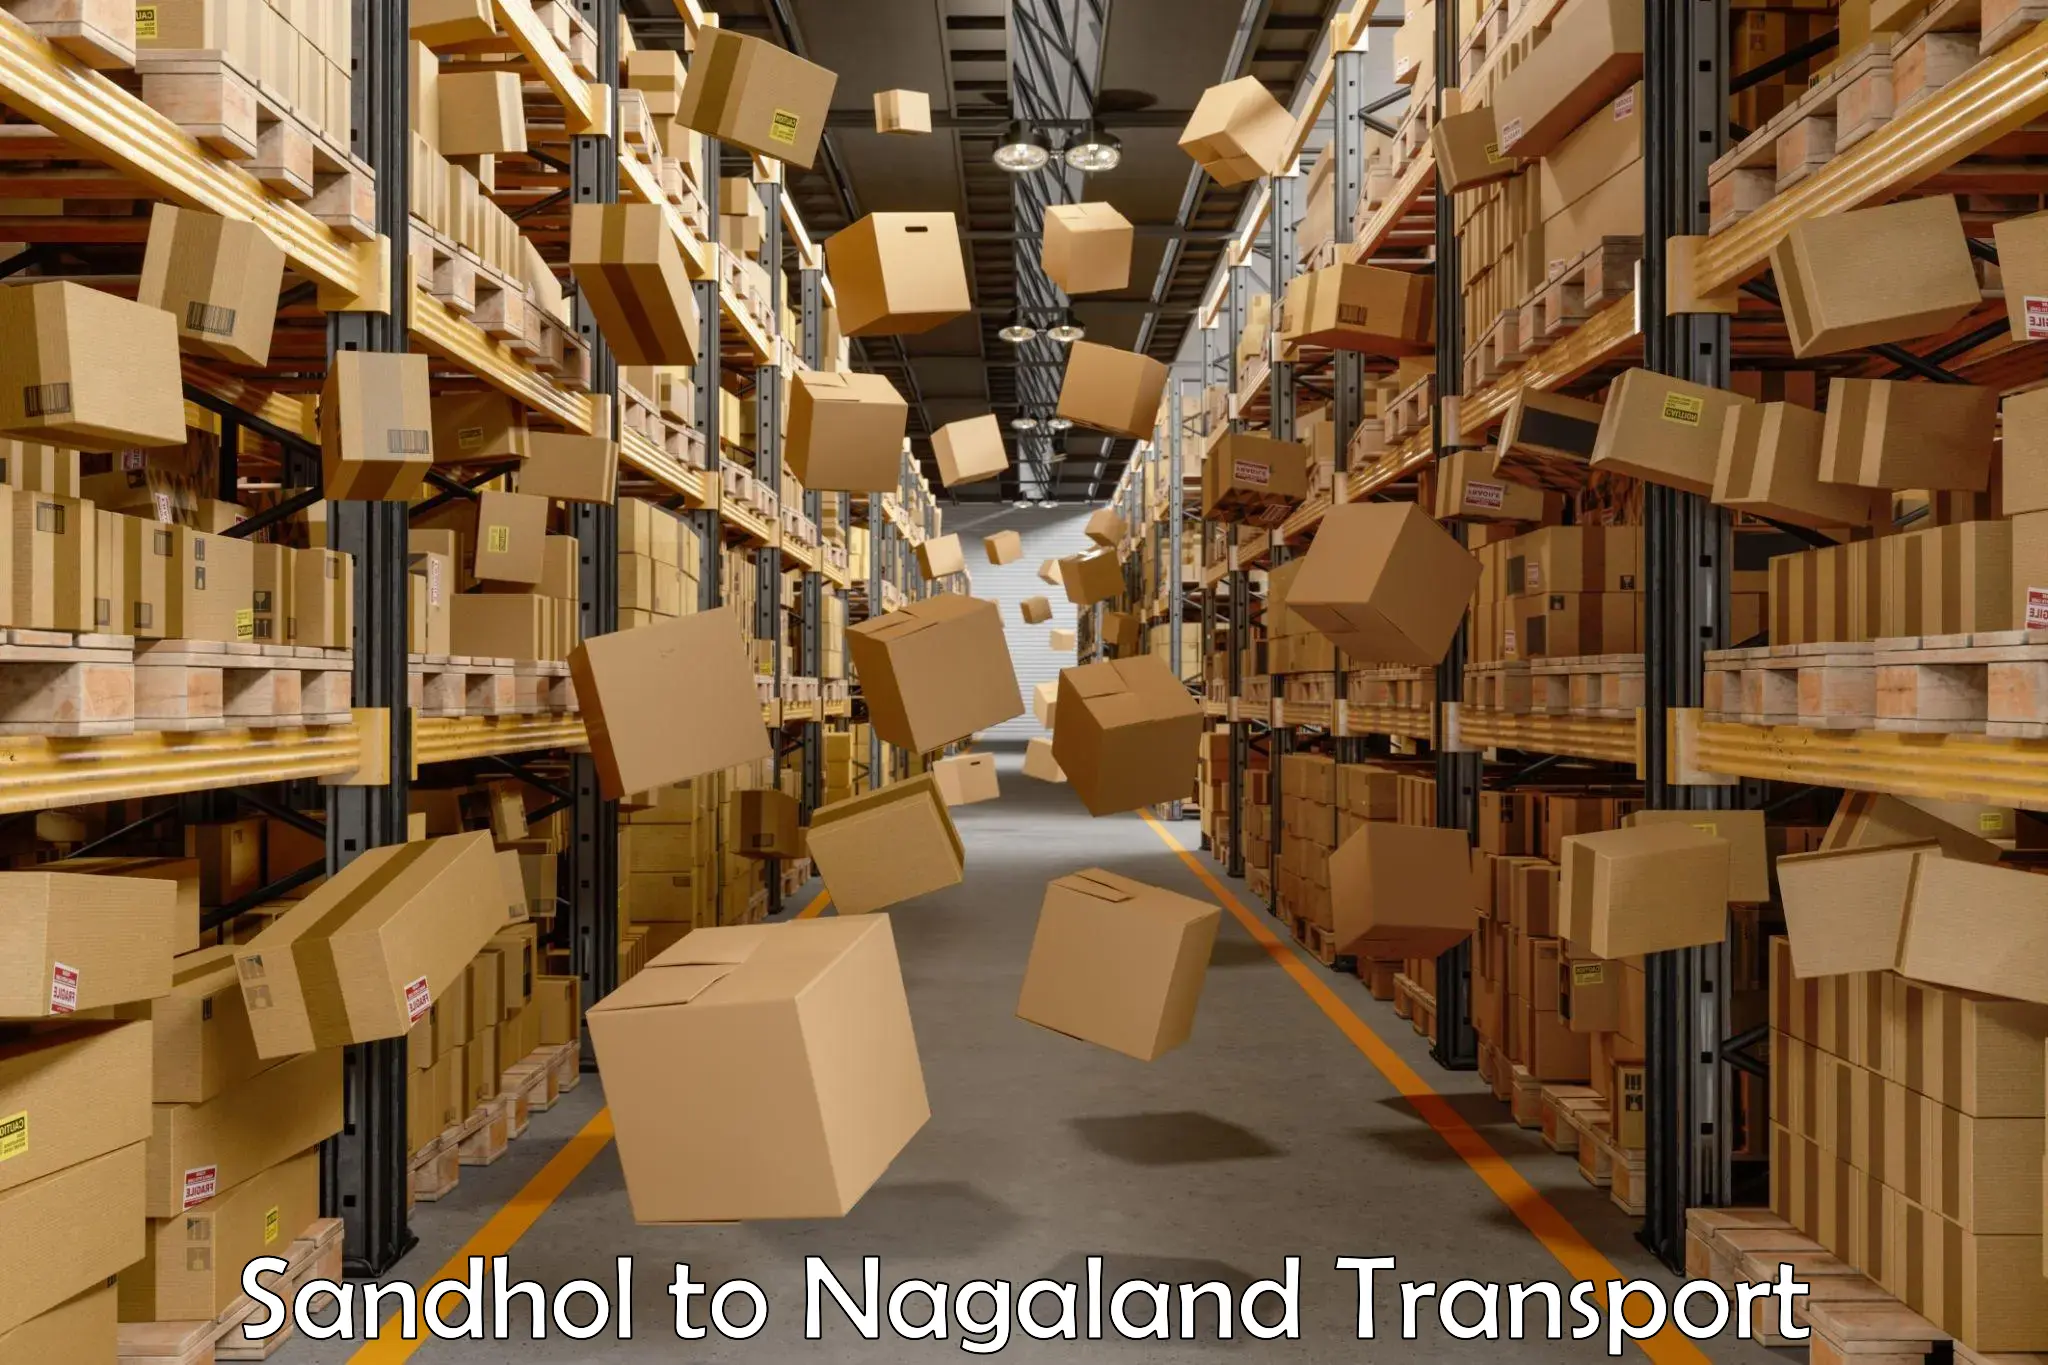 Goods delivery service Sandhol to Nagaland